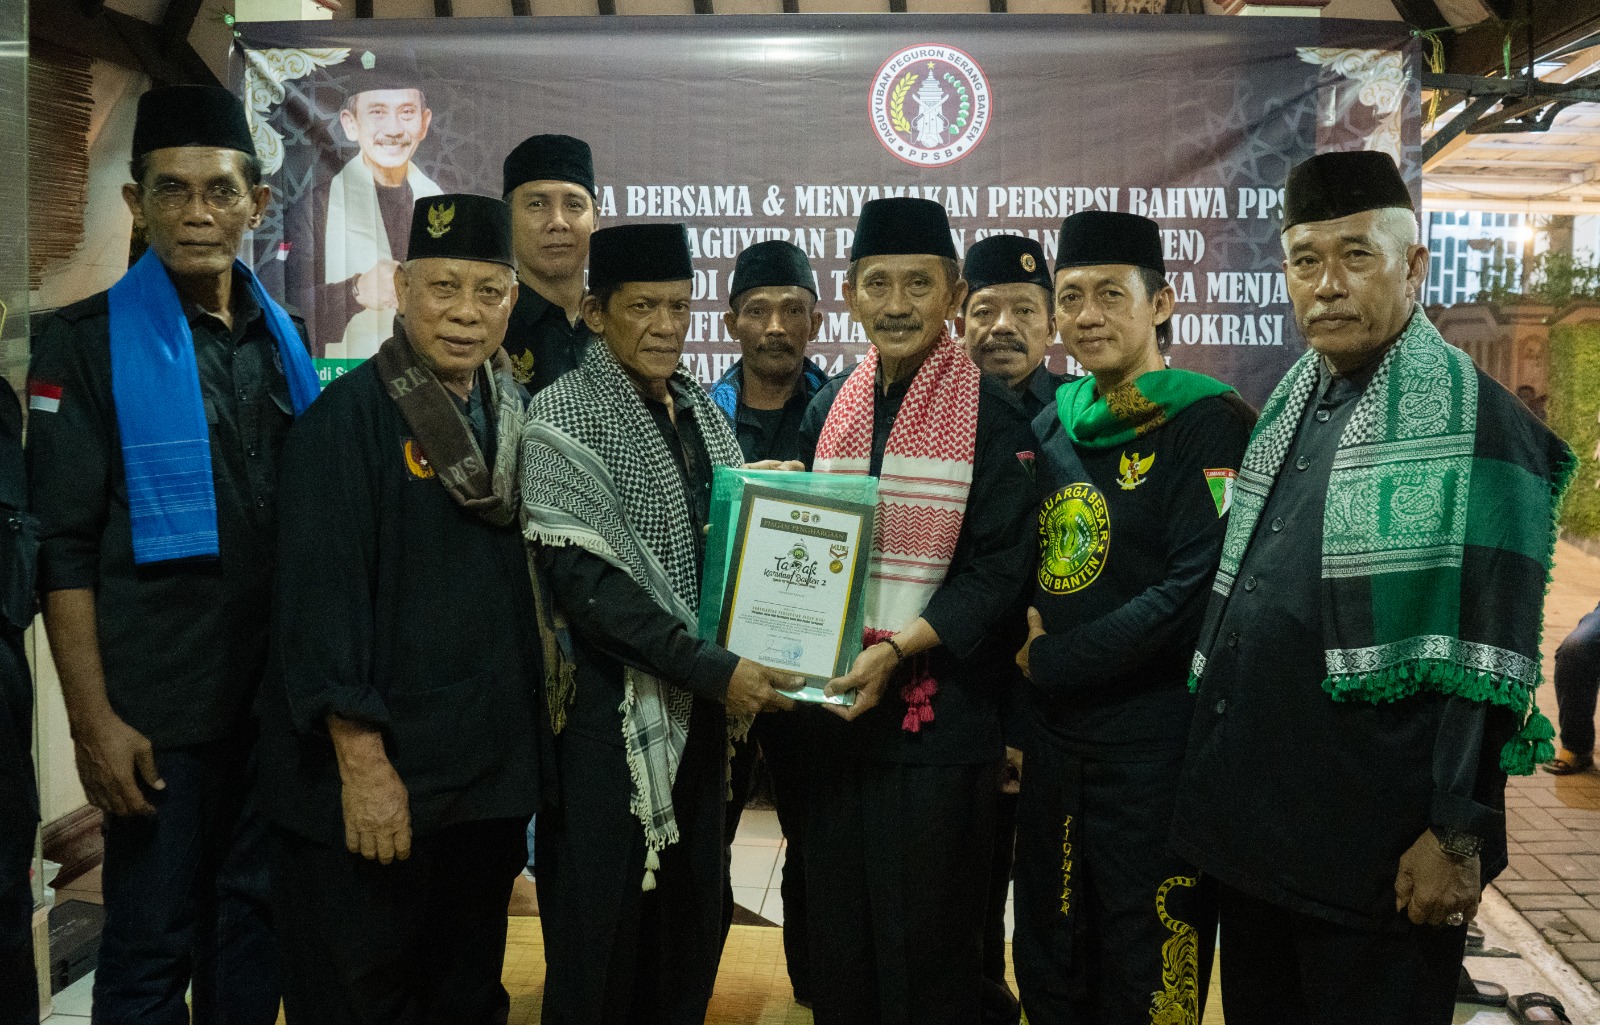 Indonesia Demokrasi, PPSB: Siap Jadi Garda Terdepan Pengamanan di Banten